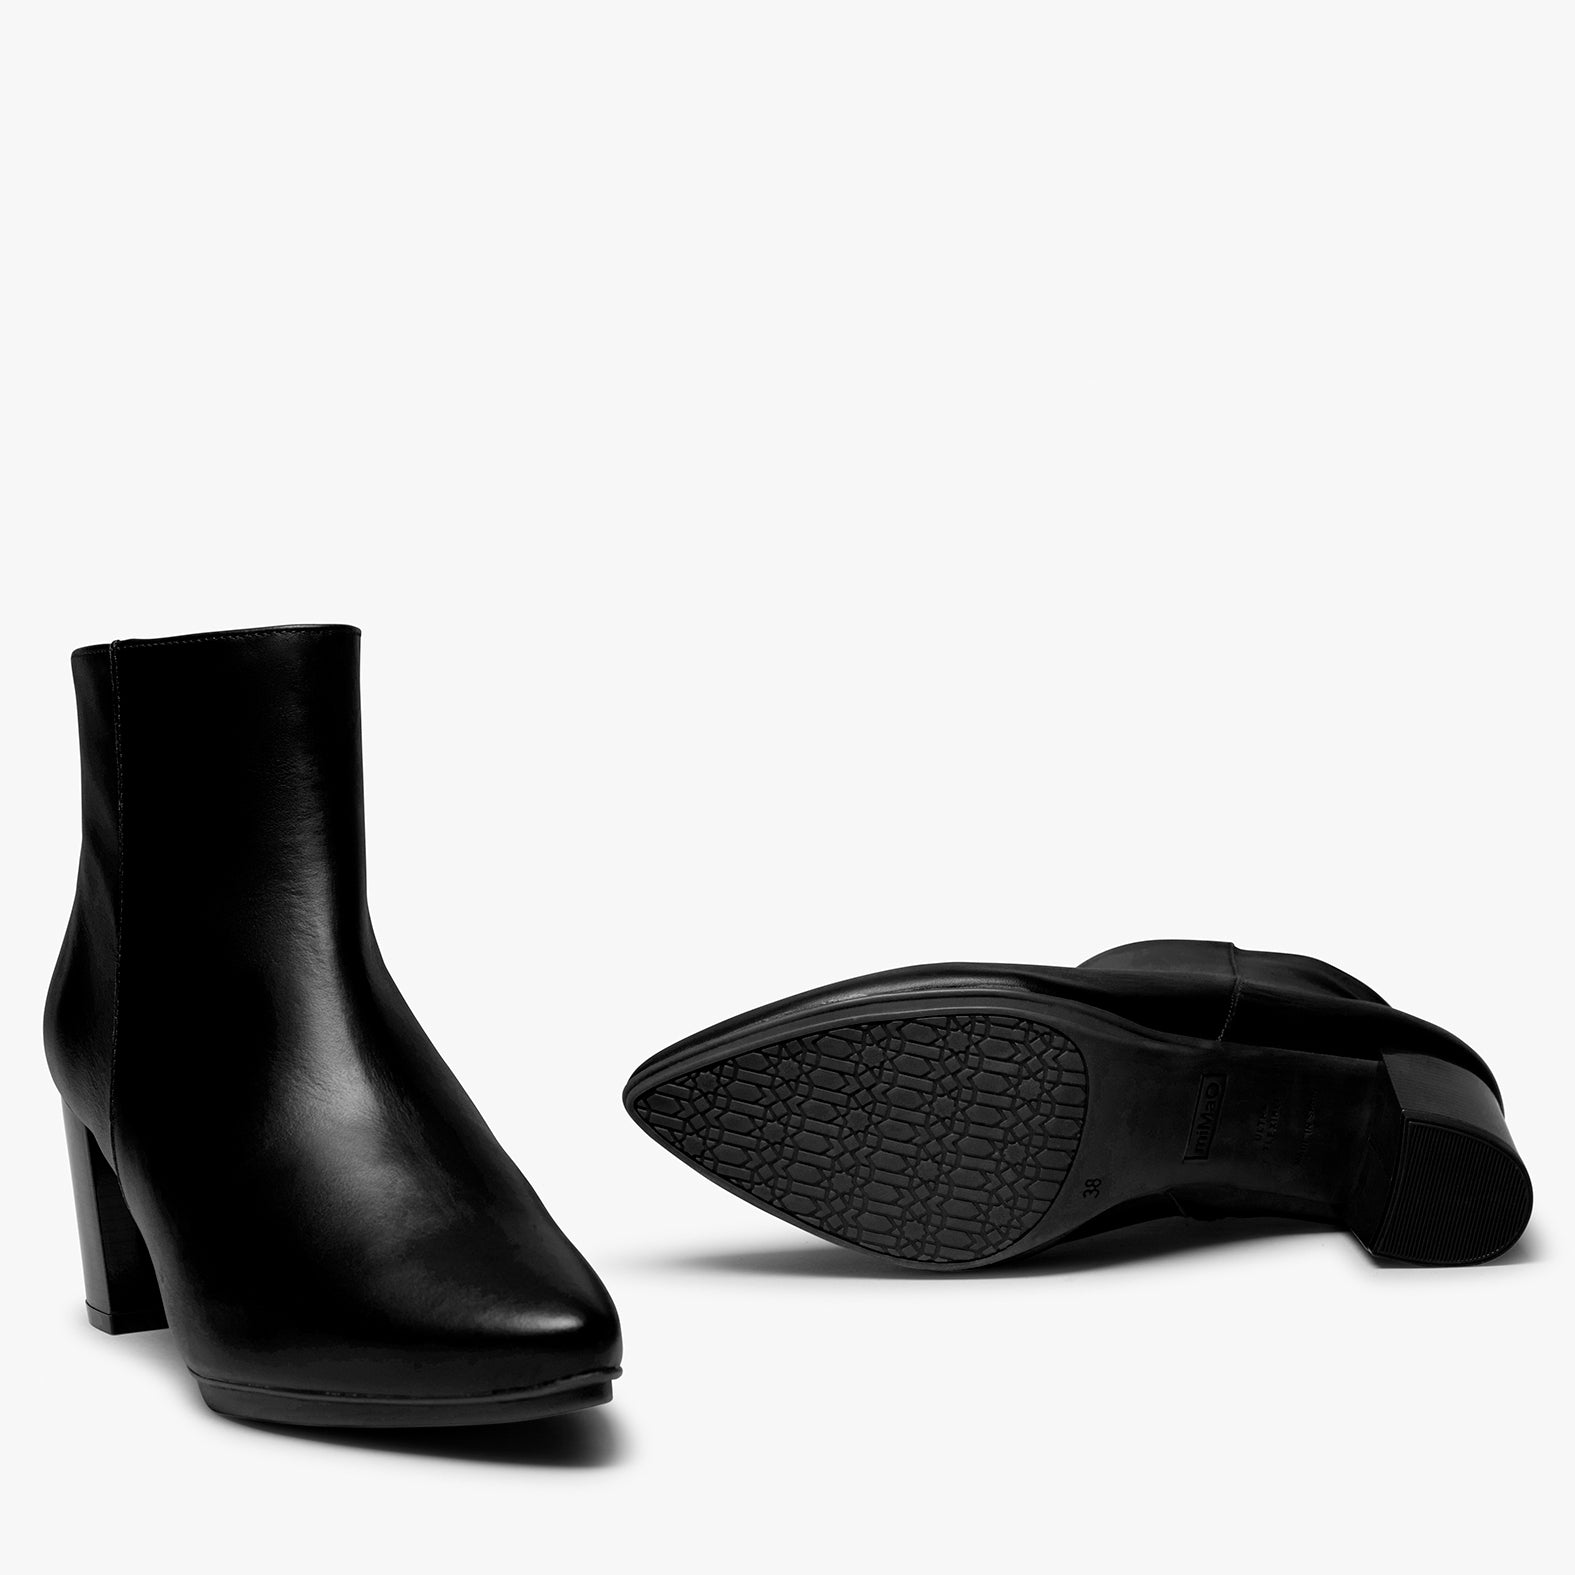 MOON – BLACK mid heel bootie